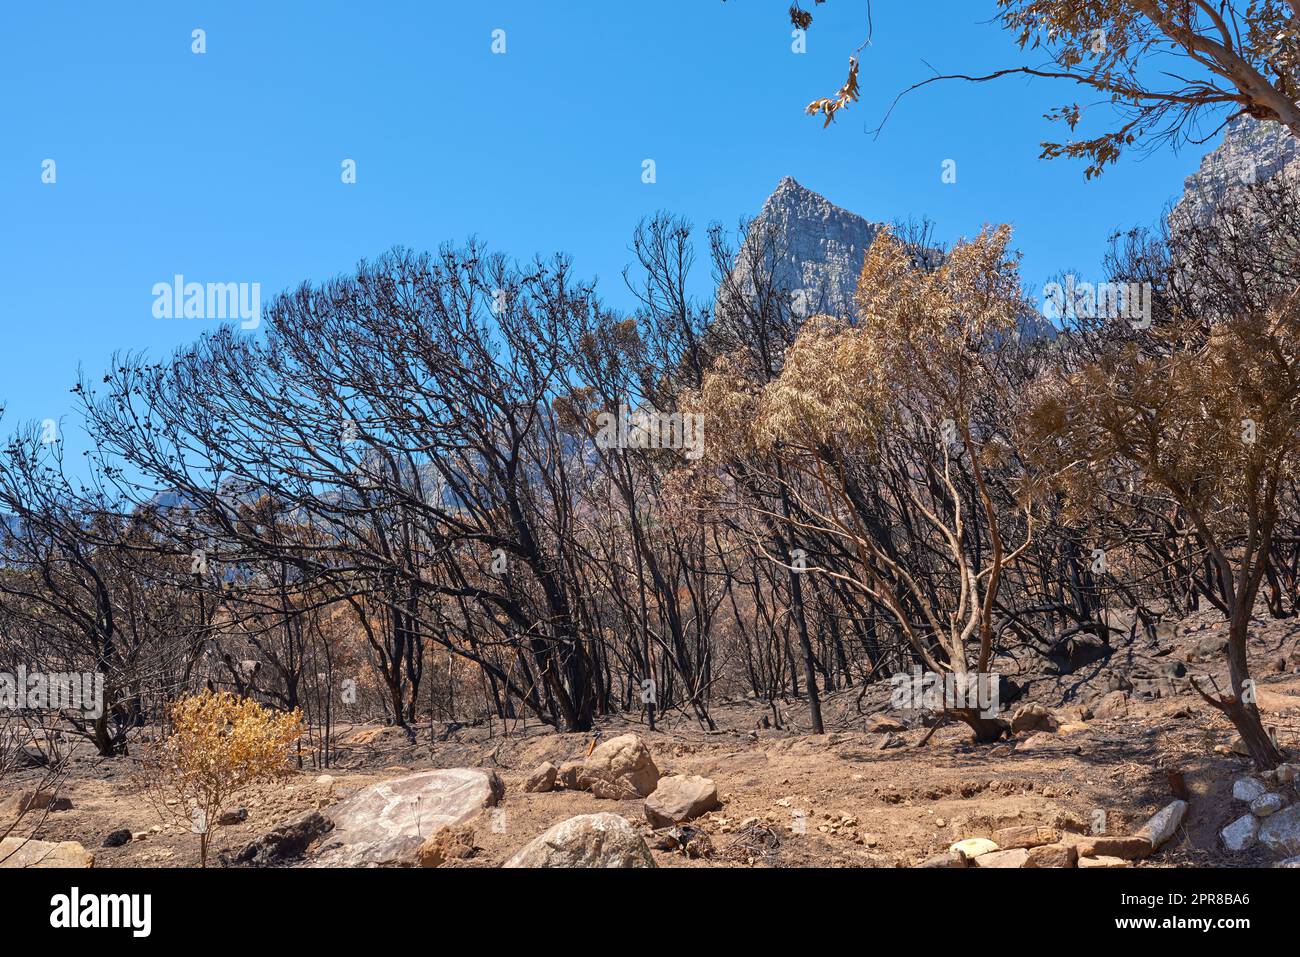 Una foresta di alberi bruciati dopo un incendio a Table Mountain, città del Capo, Sudafrica. Molti alberi alti sono stati distrutti in un incendio. Sotto i tronchi di alberi bruciati neri su una collina in una giornata di sole Foto Stock